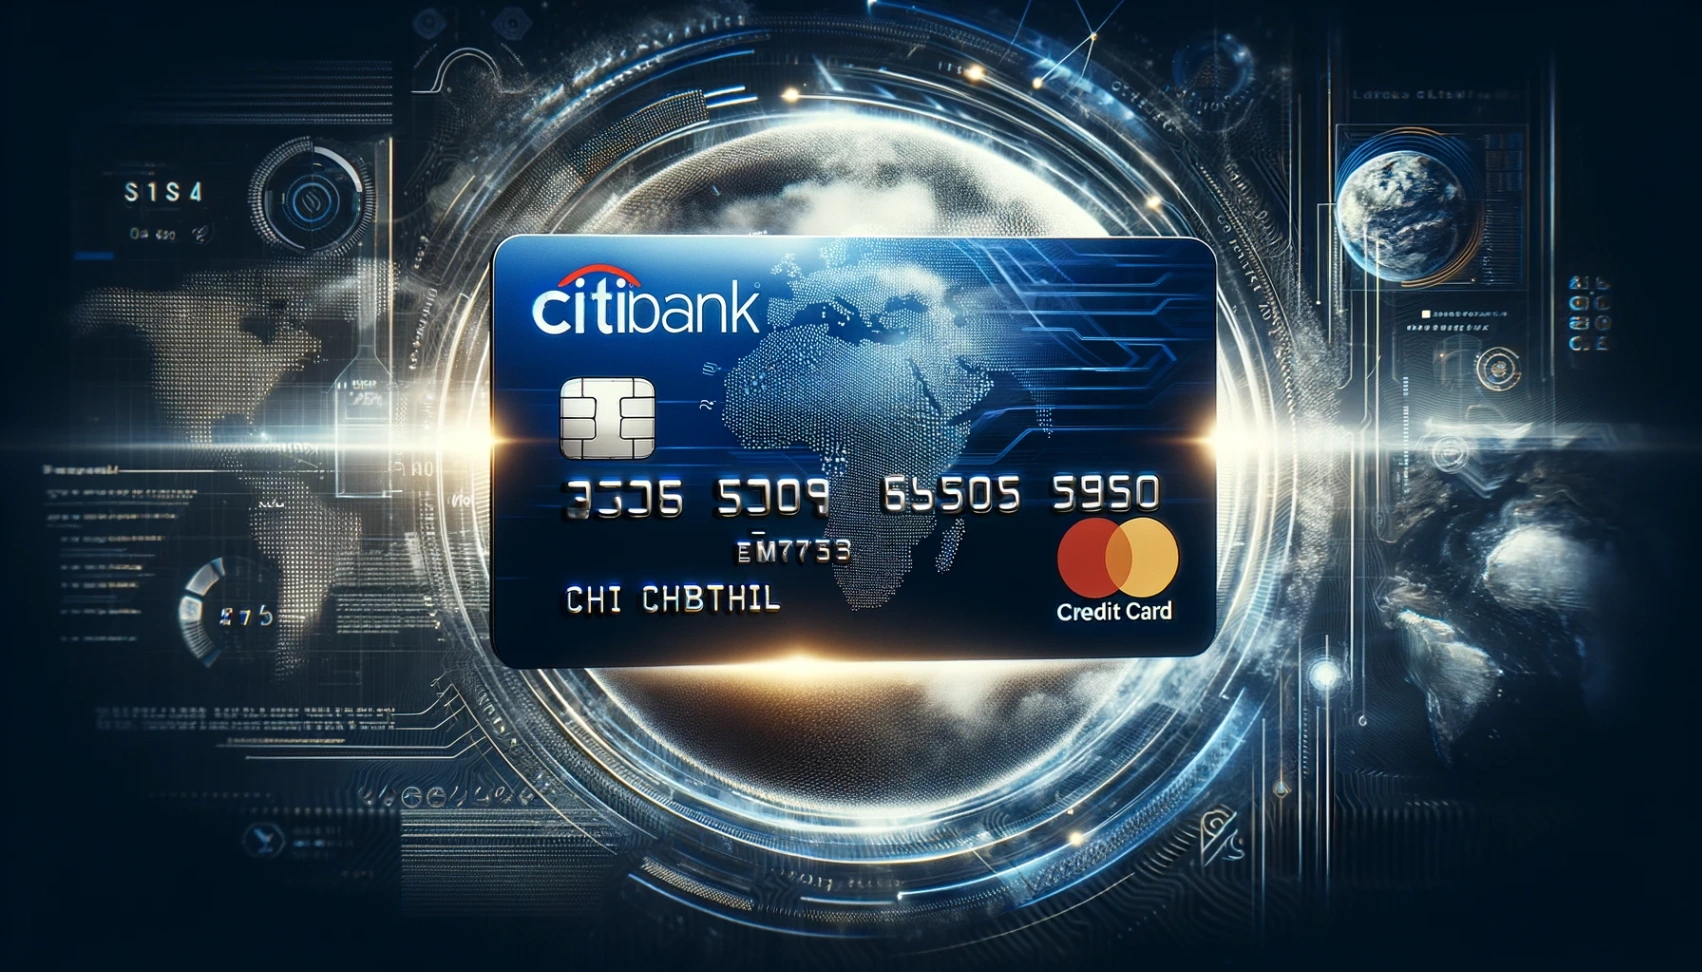 सिटीबैंक क्रेडिट कार्ड - ऑनलाइन आवेदन करने का तरीका सीखें